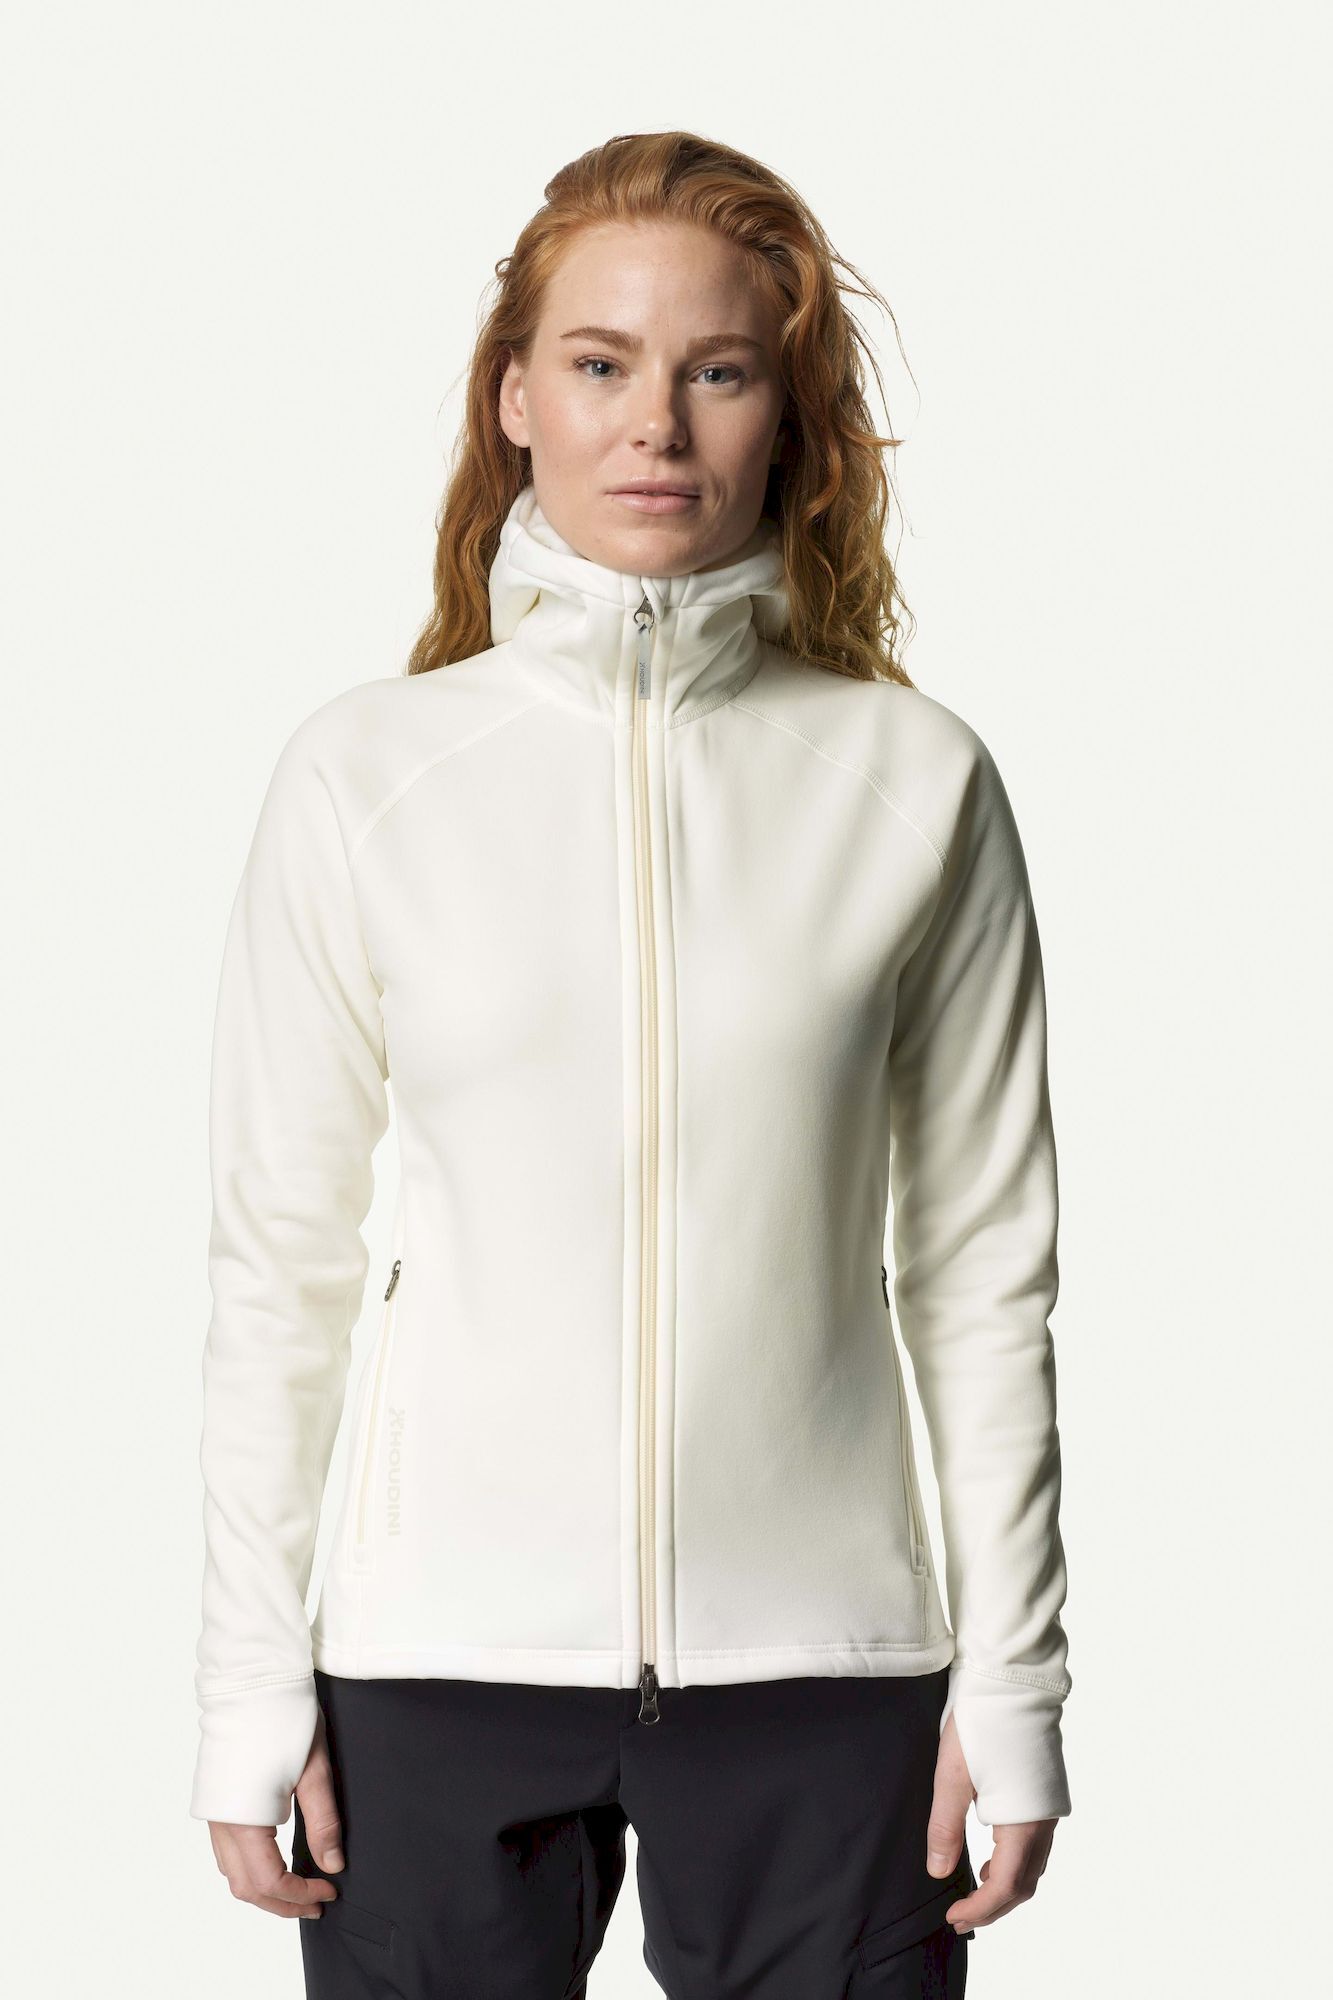 Houdini Sportswear W's Power Houdi - Fleece jacket - Women's